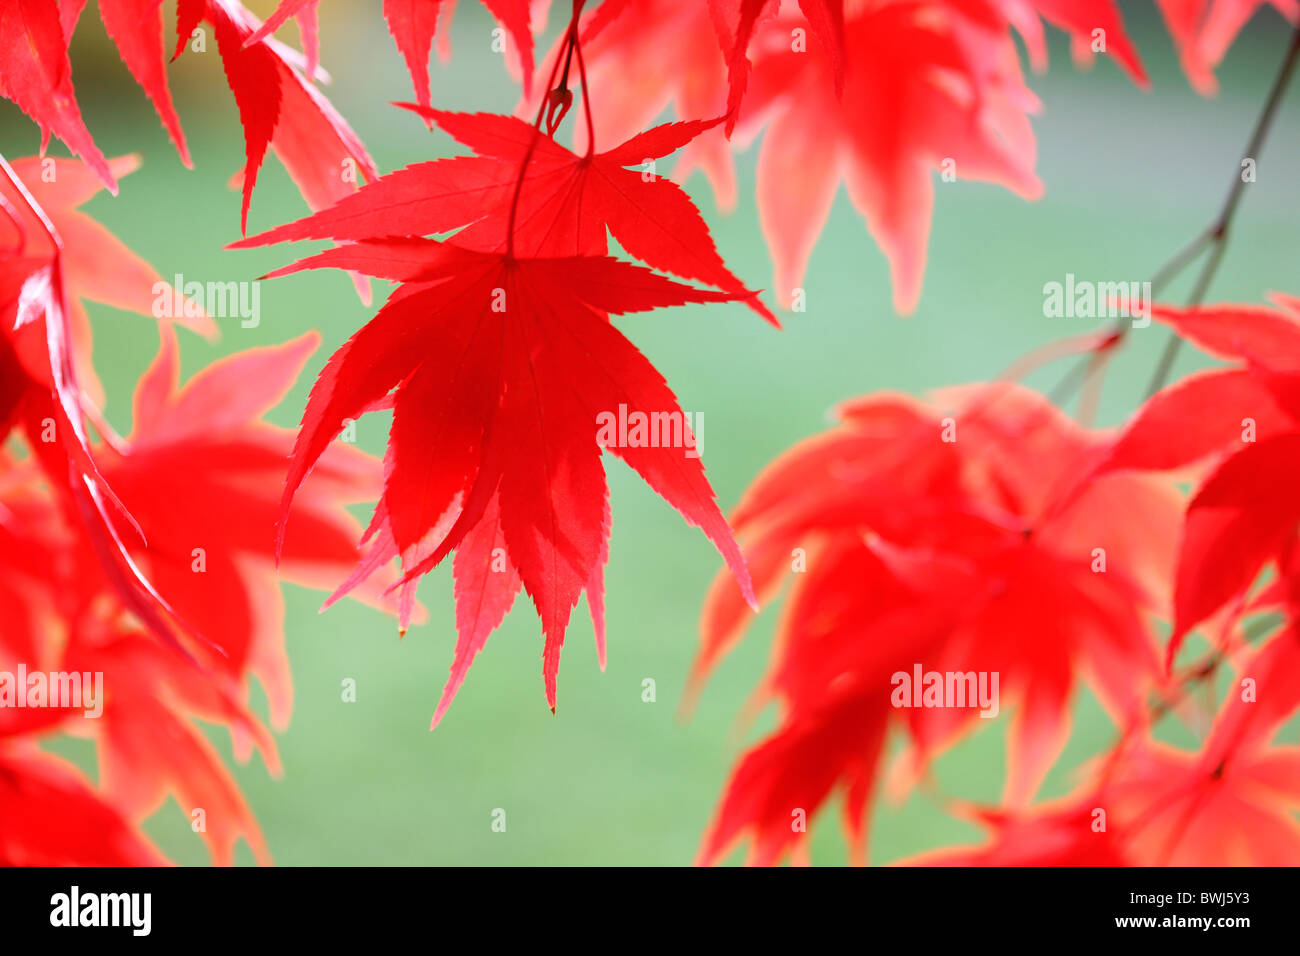 stimmungsvoll und verträumt rot-Ahornbaum, reich und üppig - Kunstfotografie Jane Ann Butler Fotografie JABP931 Stockfoto